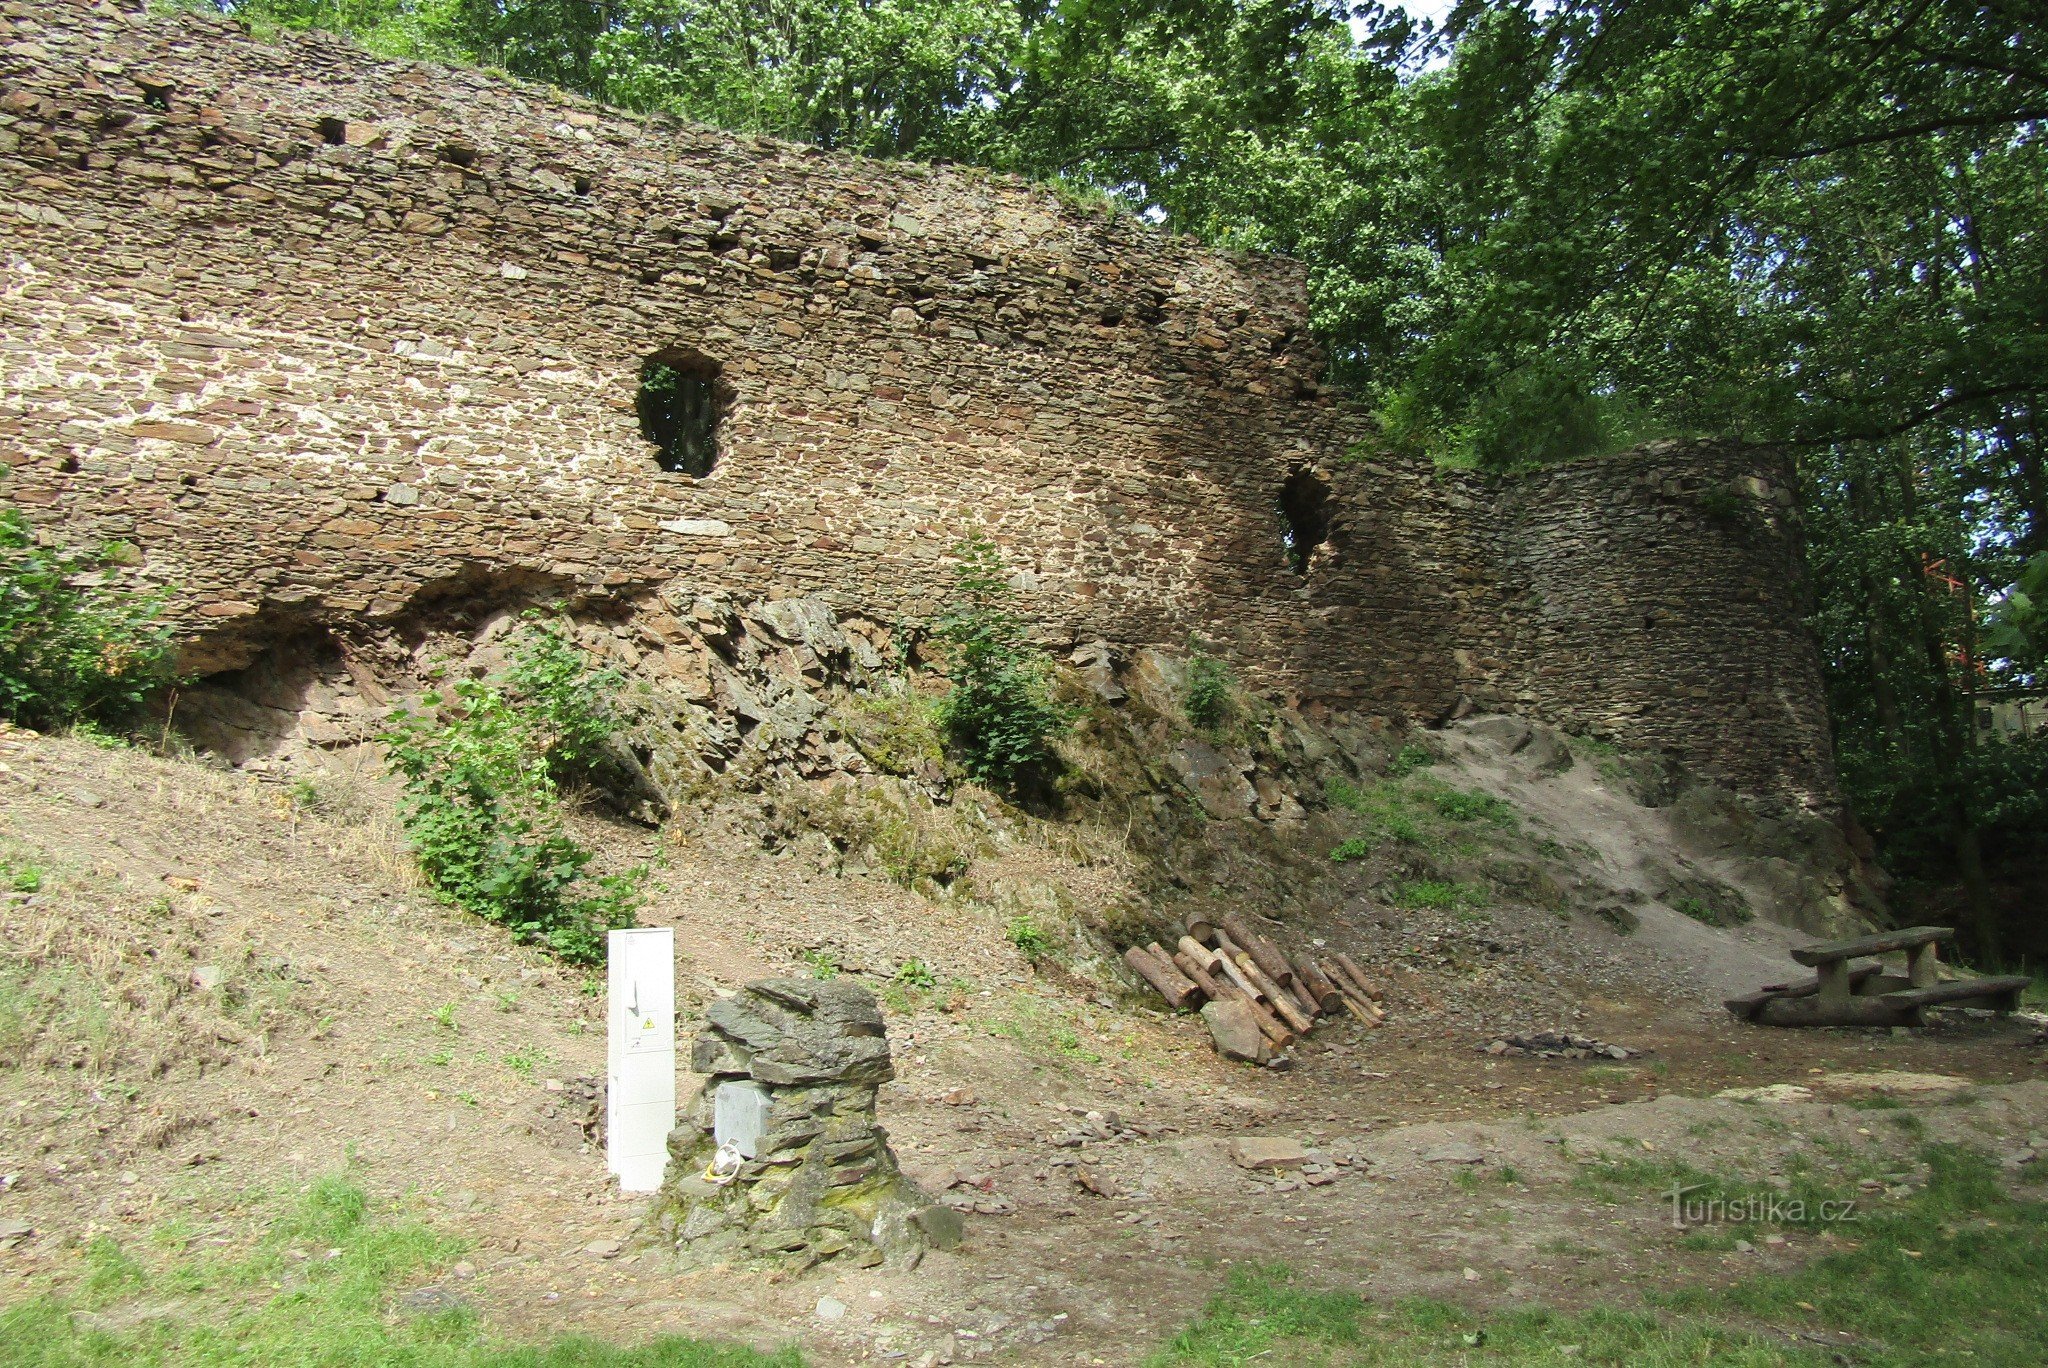 Το κάστρο Cimburk ονομάζεται επίσης Trnávka